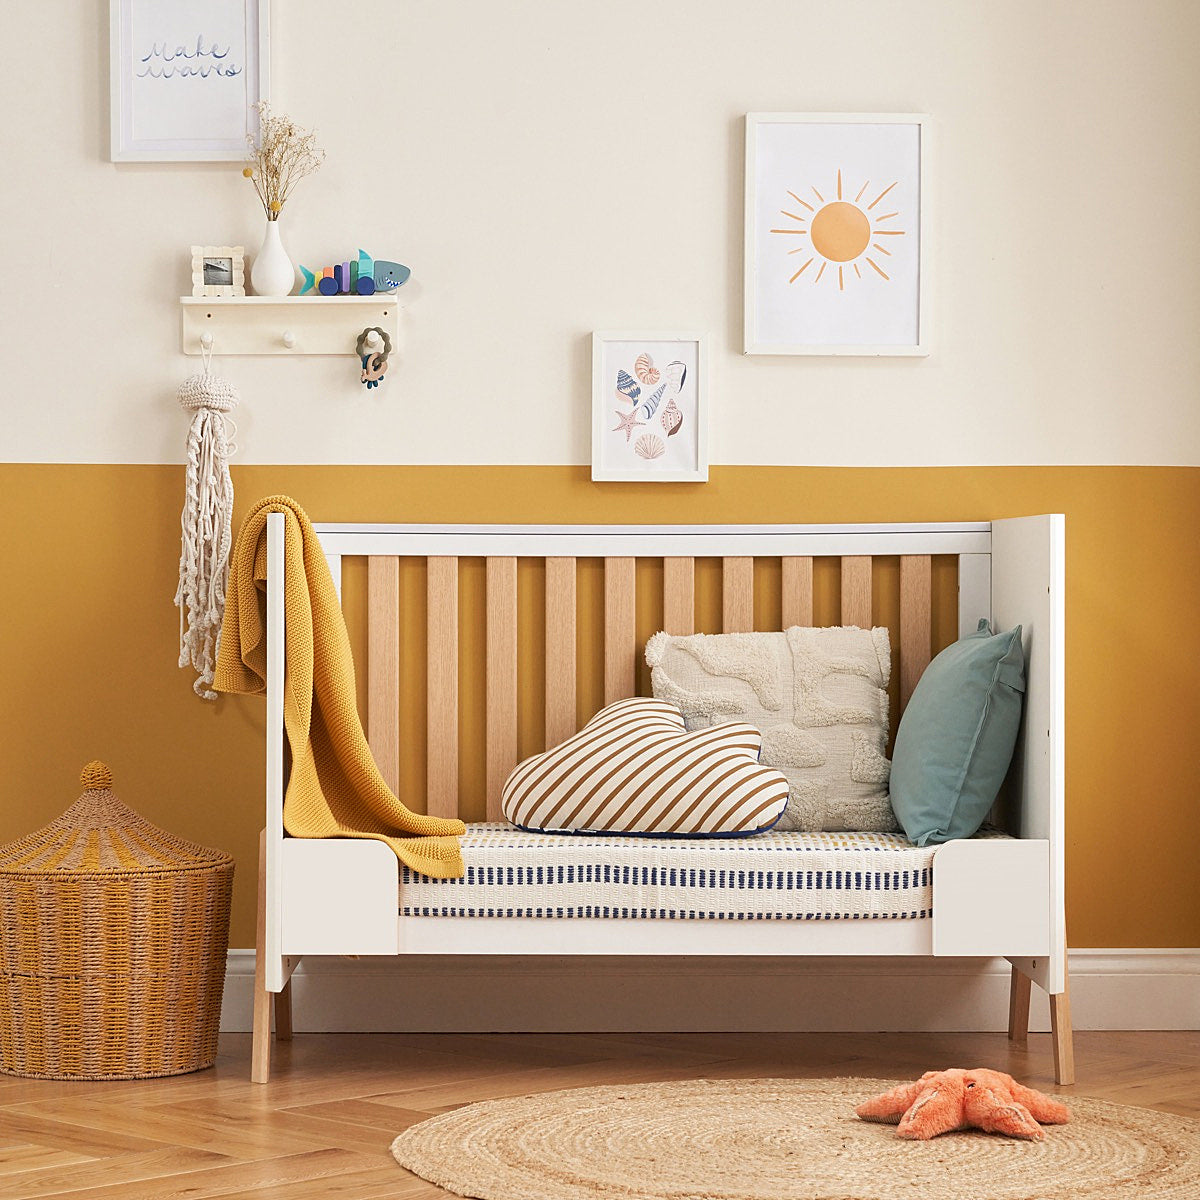 Tutti Bambini  Fuori Mini Cot Bed - White/Light Oak -  | For Your Little One